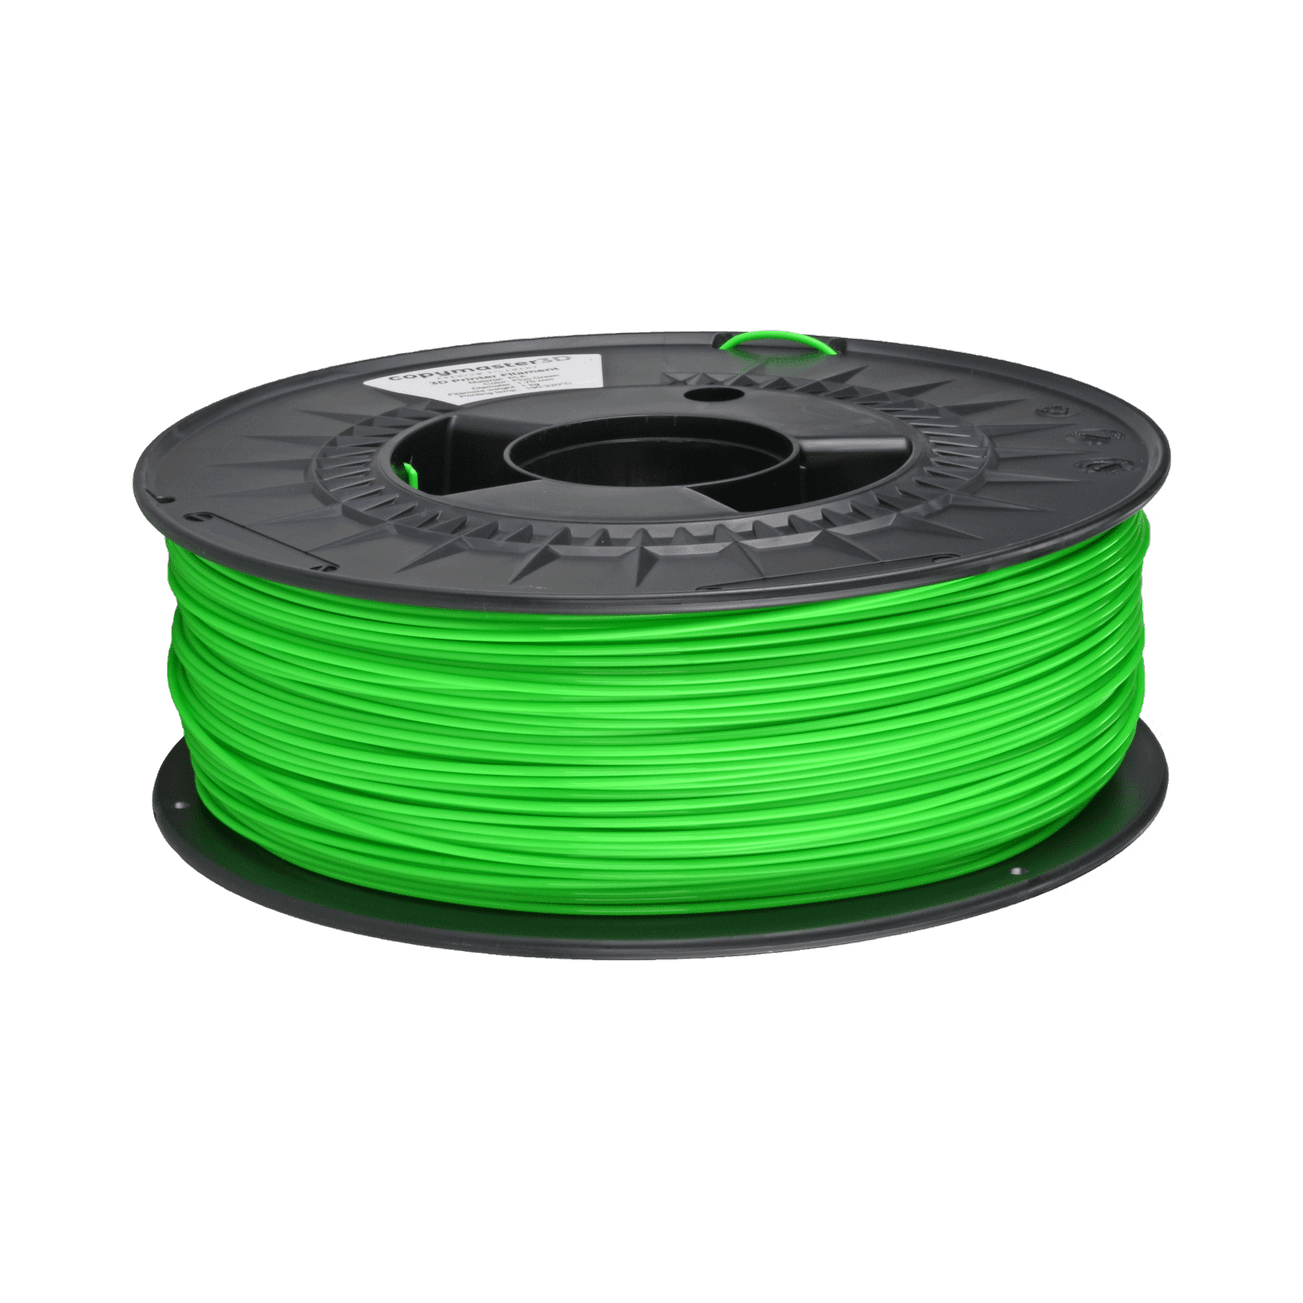 Copymaster3D Premium PLA Filament 1.75mm 1KG Fluorescent Green